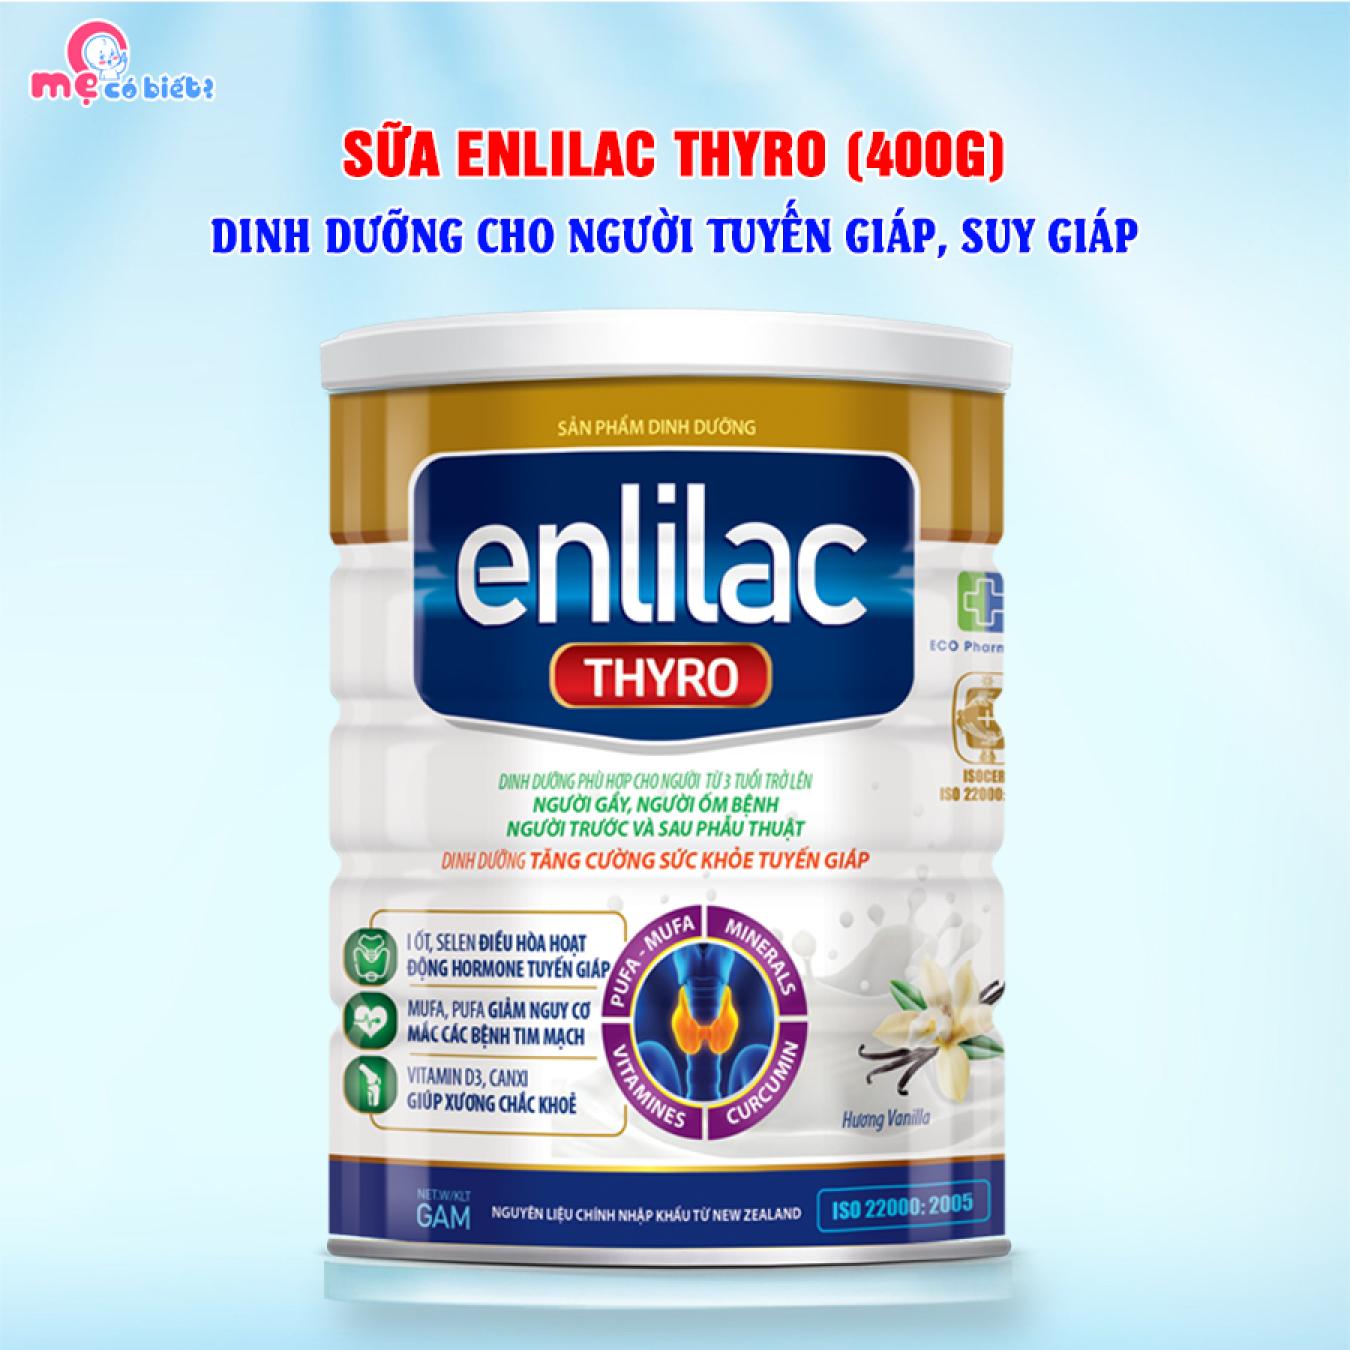 Enlilac Thyro 400g - Sữa Dành Cho Người Ung Thư Tuyến Giáp